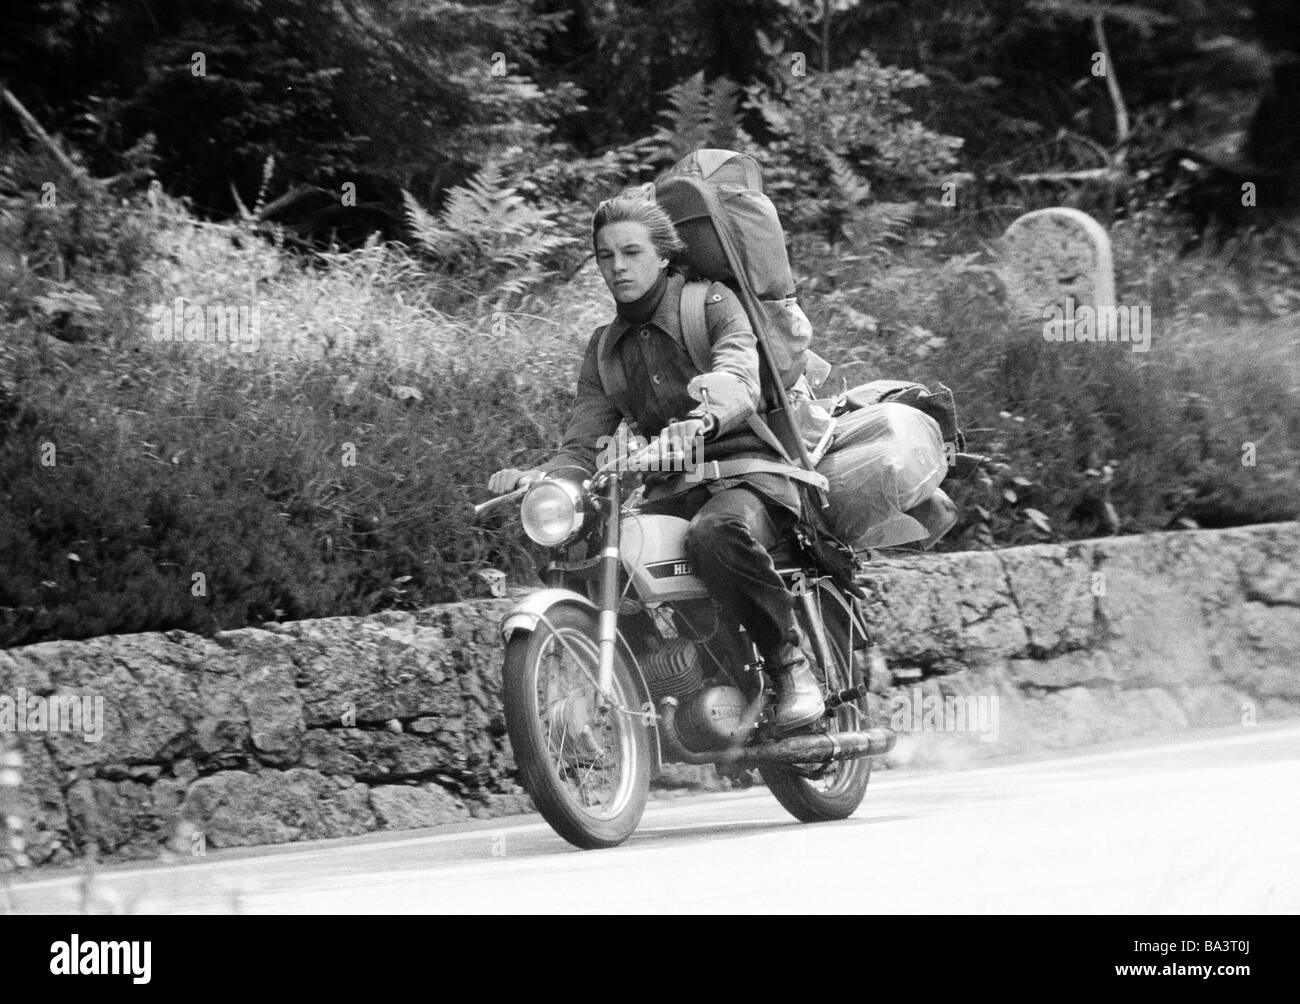 Années 70, photo en noir et blanc, le trafic routier, freetime, jeune homme va à une excursion avec sa moto, beaucoup de bagages sur le siège arrière, de 20 à 25 ans Banque D'Images